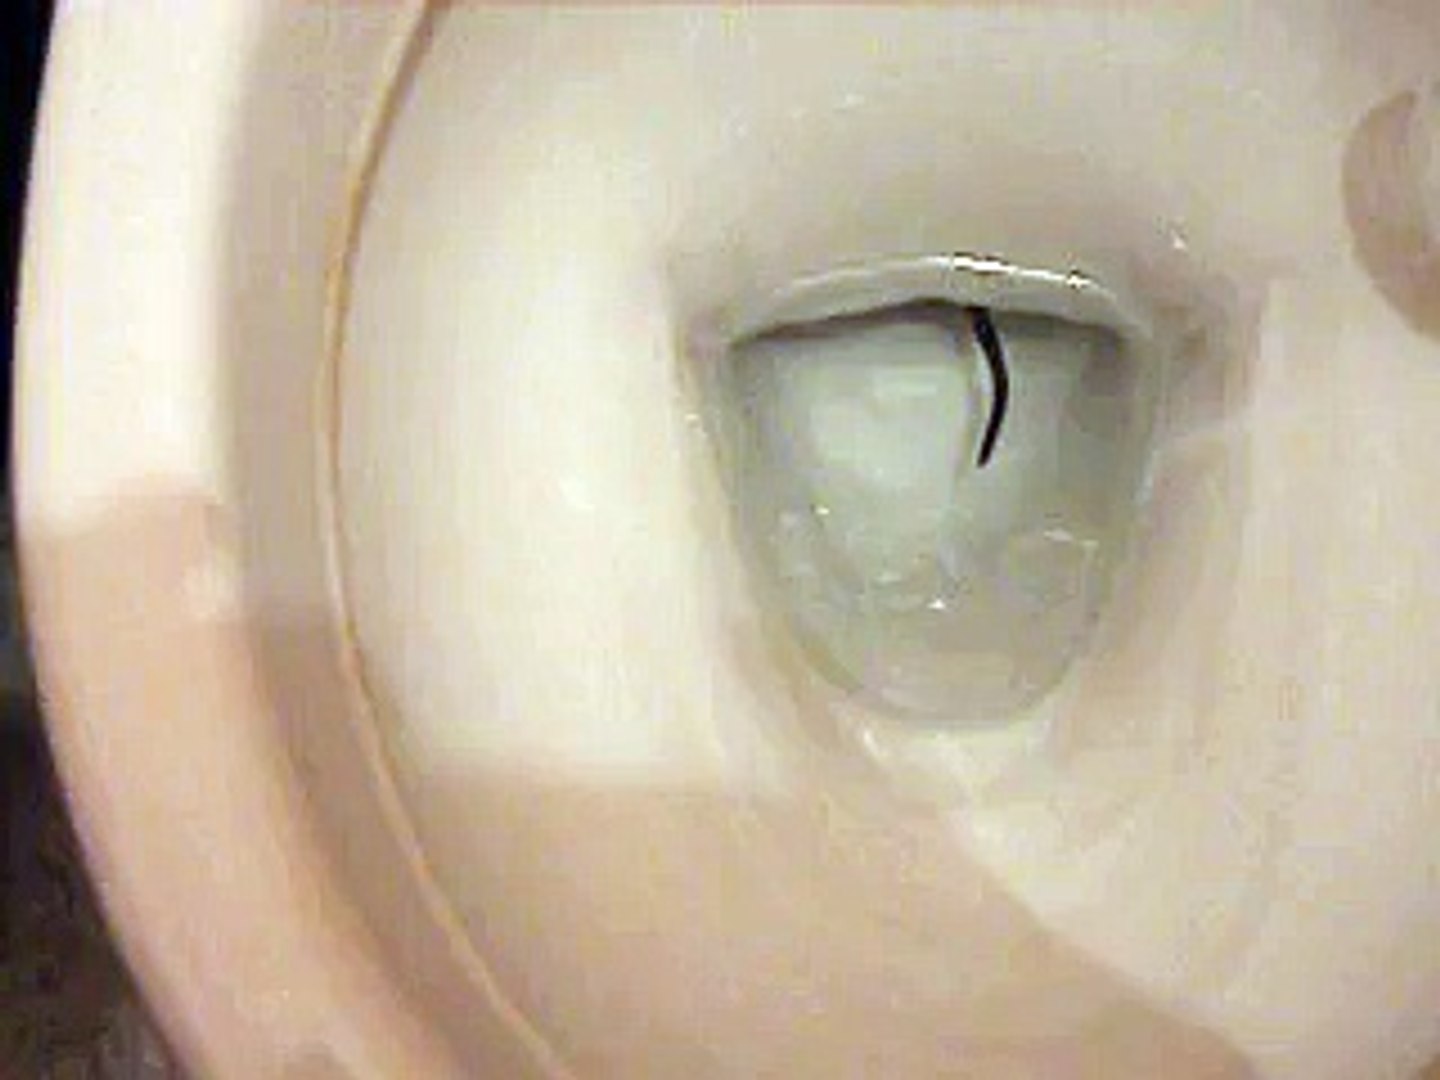 Des rats remontent dans les toilettes - Vidéo Dailymotion